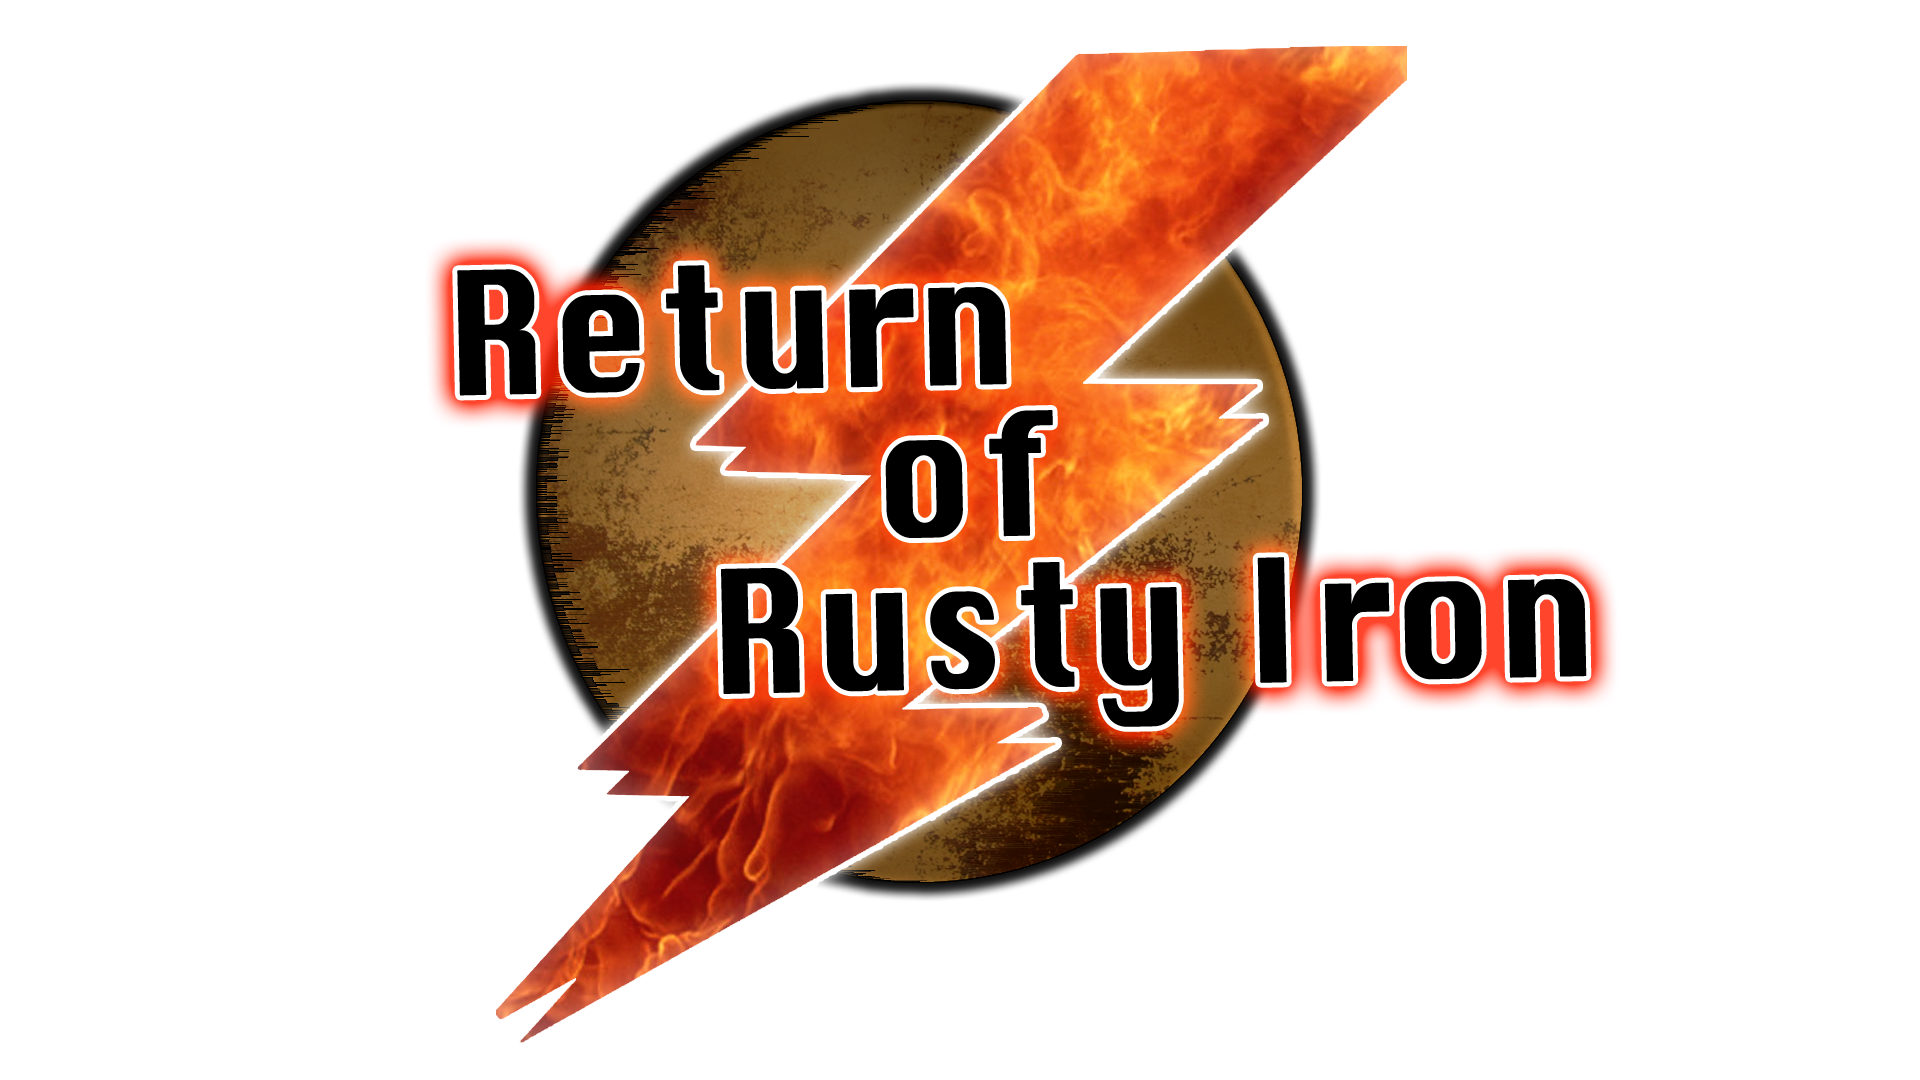 Return rust фото 95